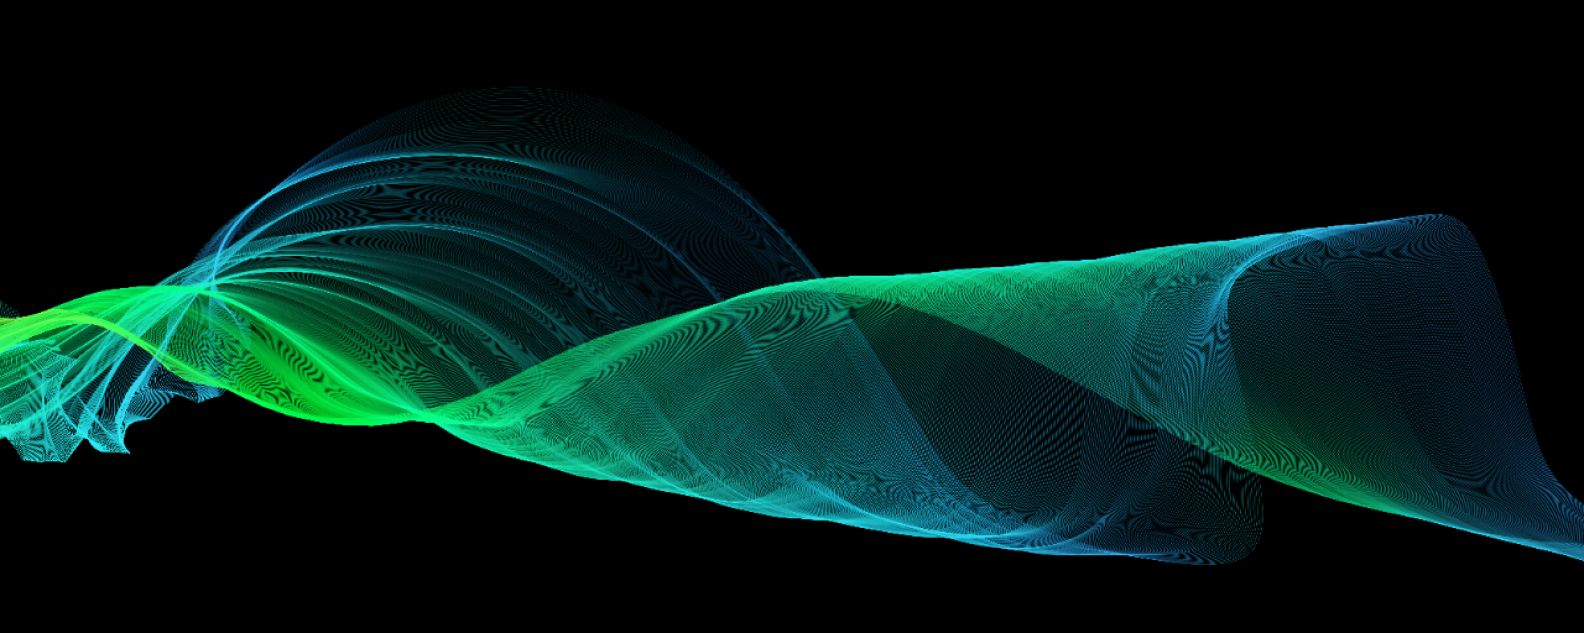 Imagen abstracta de una línea verde formando una onda con un fondo negro